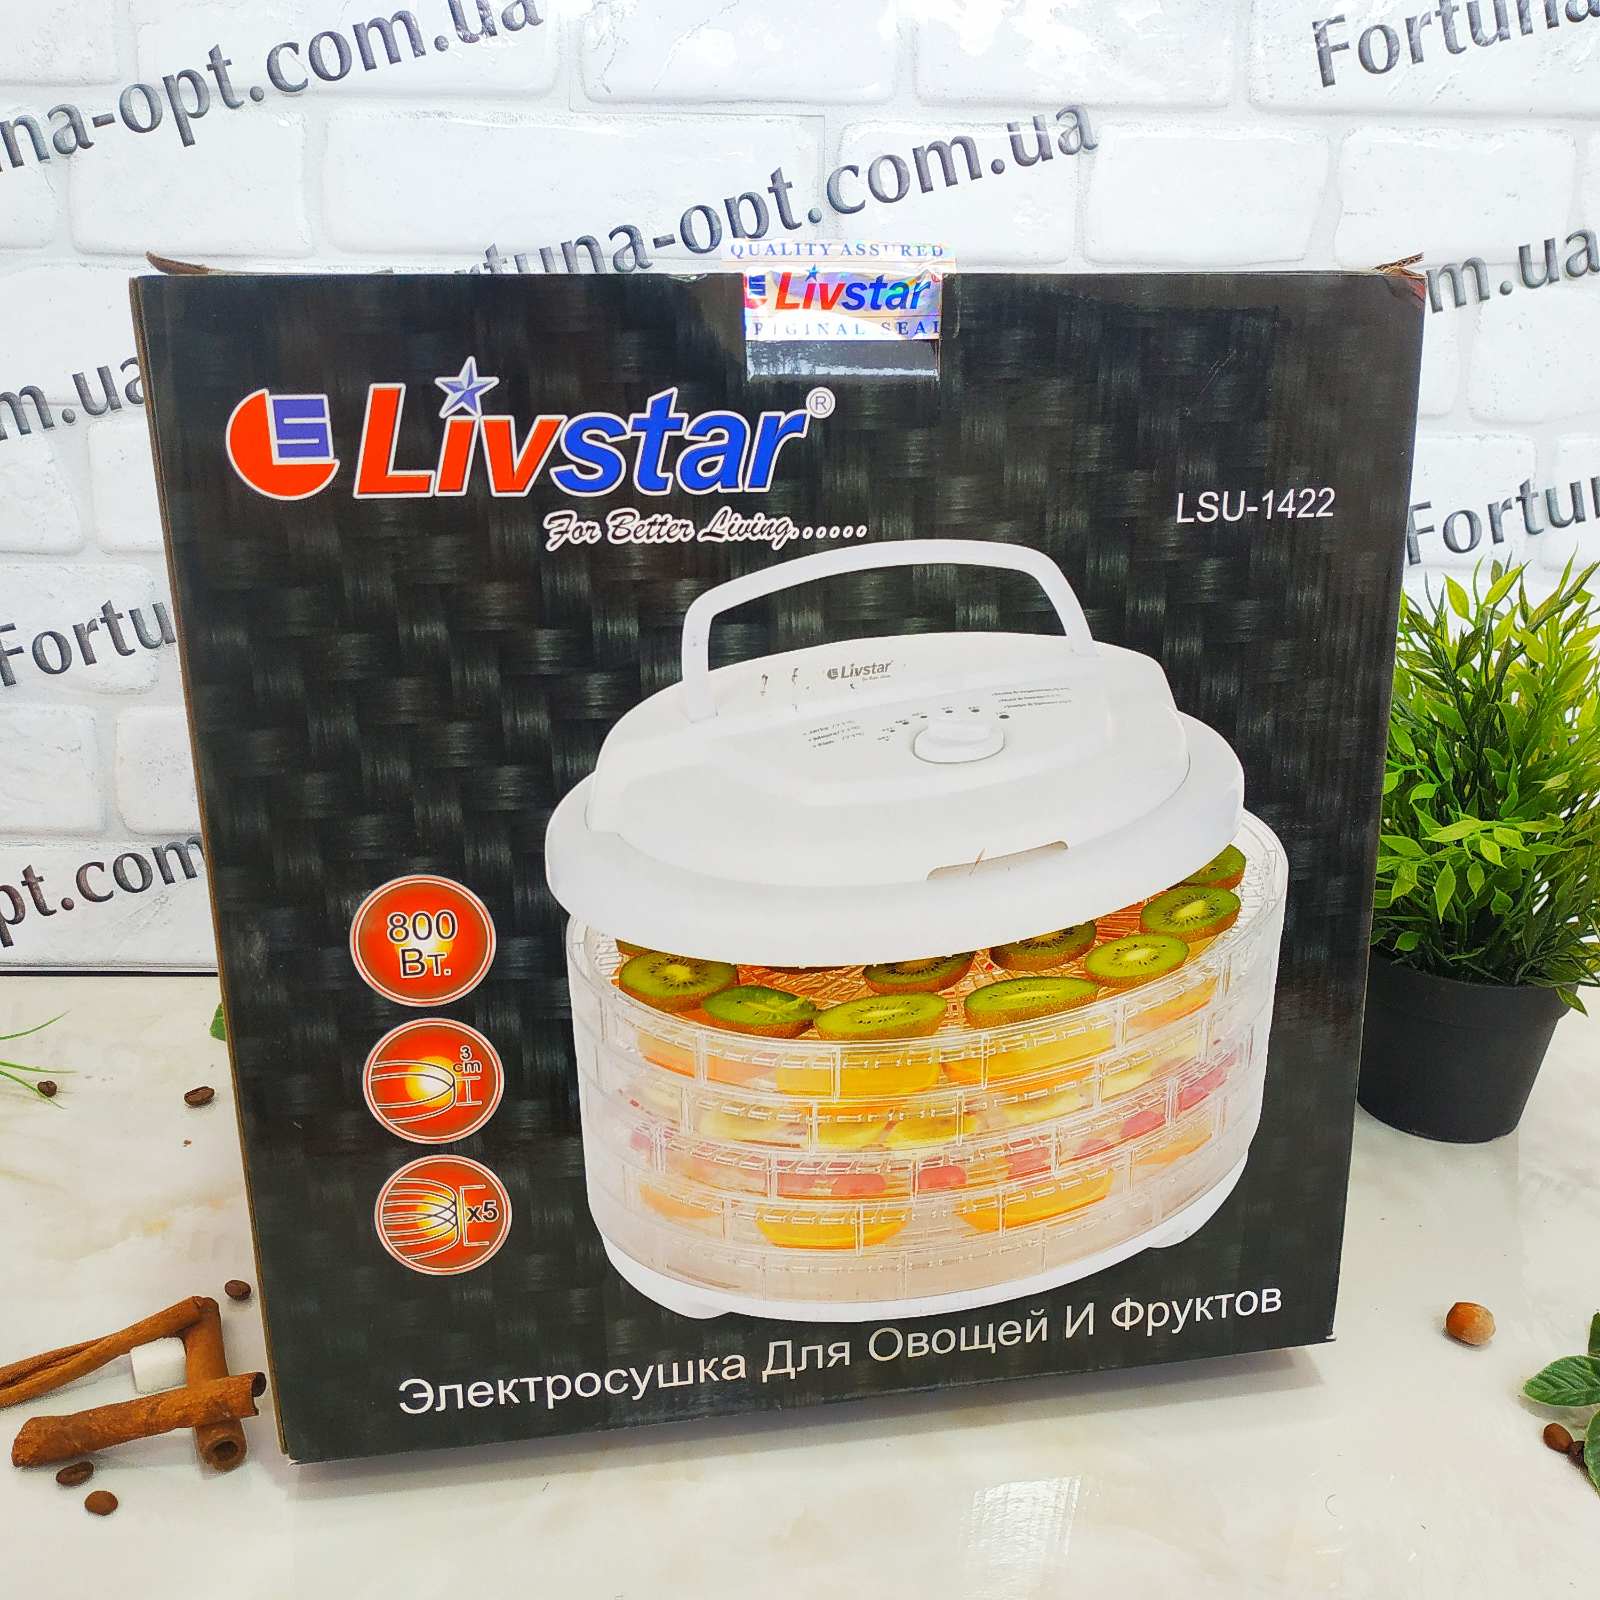 Сушилка для овощей и фруктов Livstar LSU - 1422 ✅ базовая цена $42.33 ✔ Опт ✔ Скидки ✔ Заходите! - Интернет-магазин ✅ Фортуна-опт ✅